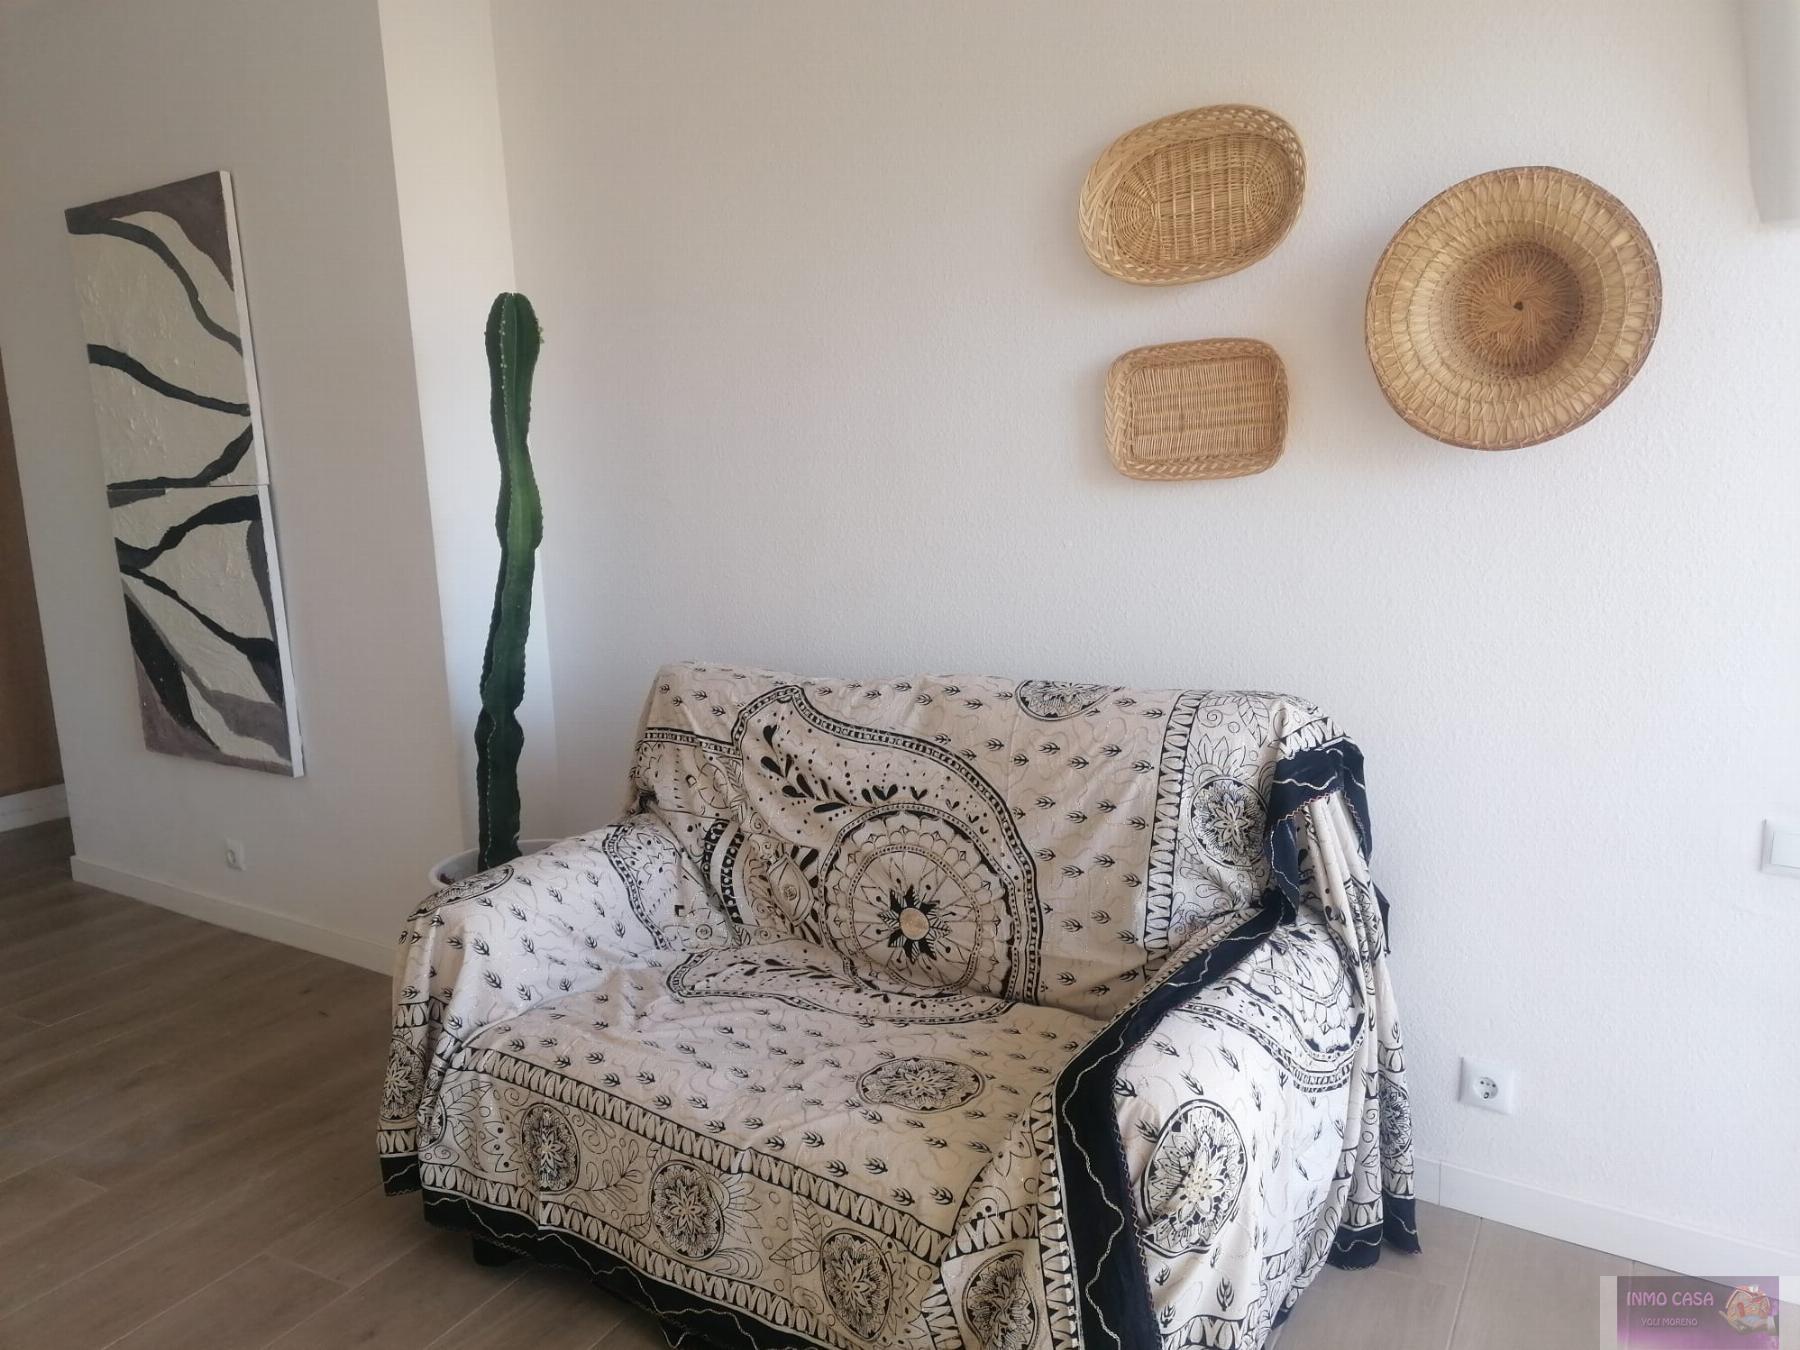 Alquiler de apartamento en Fuengirola